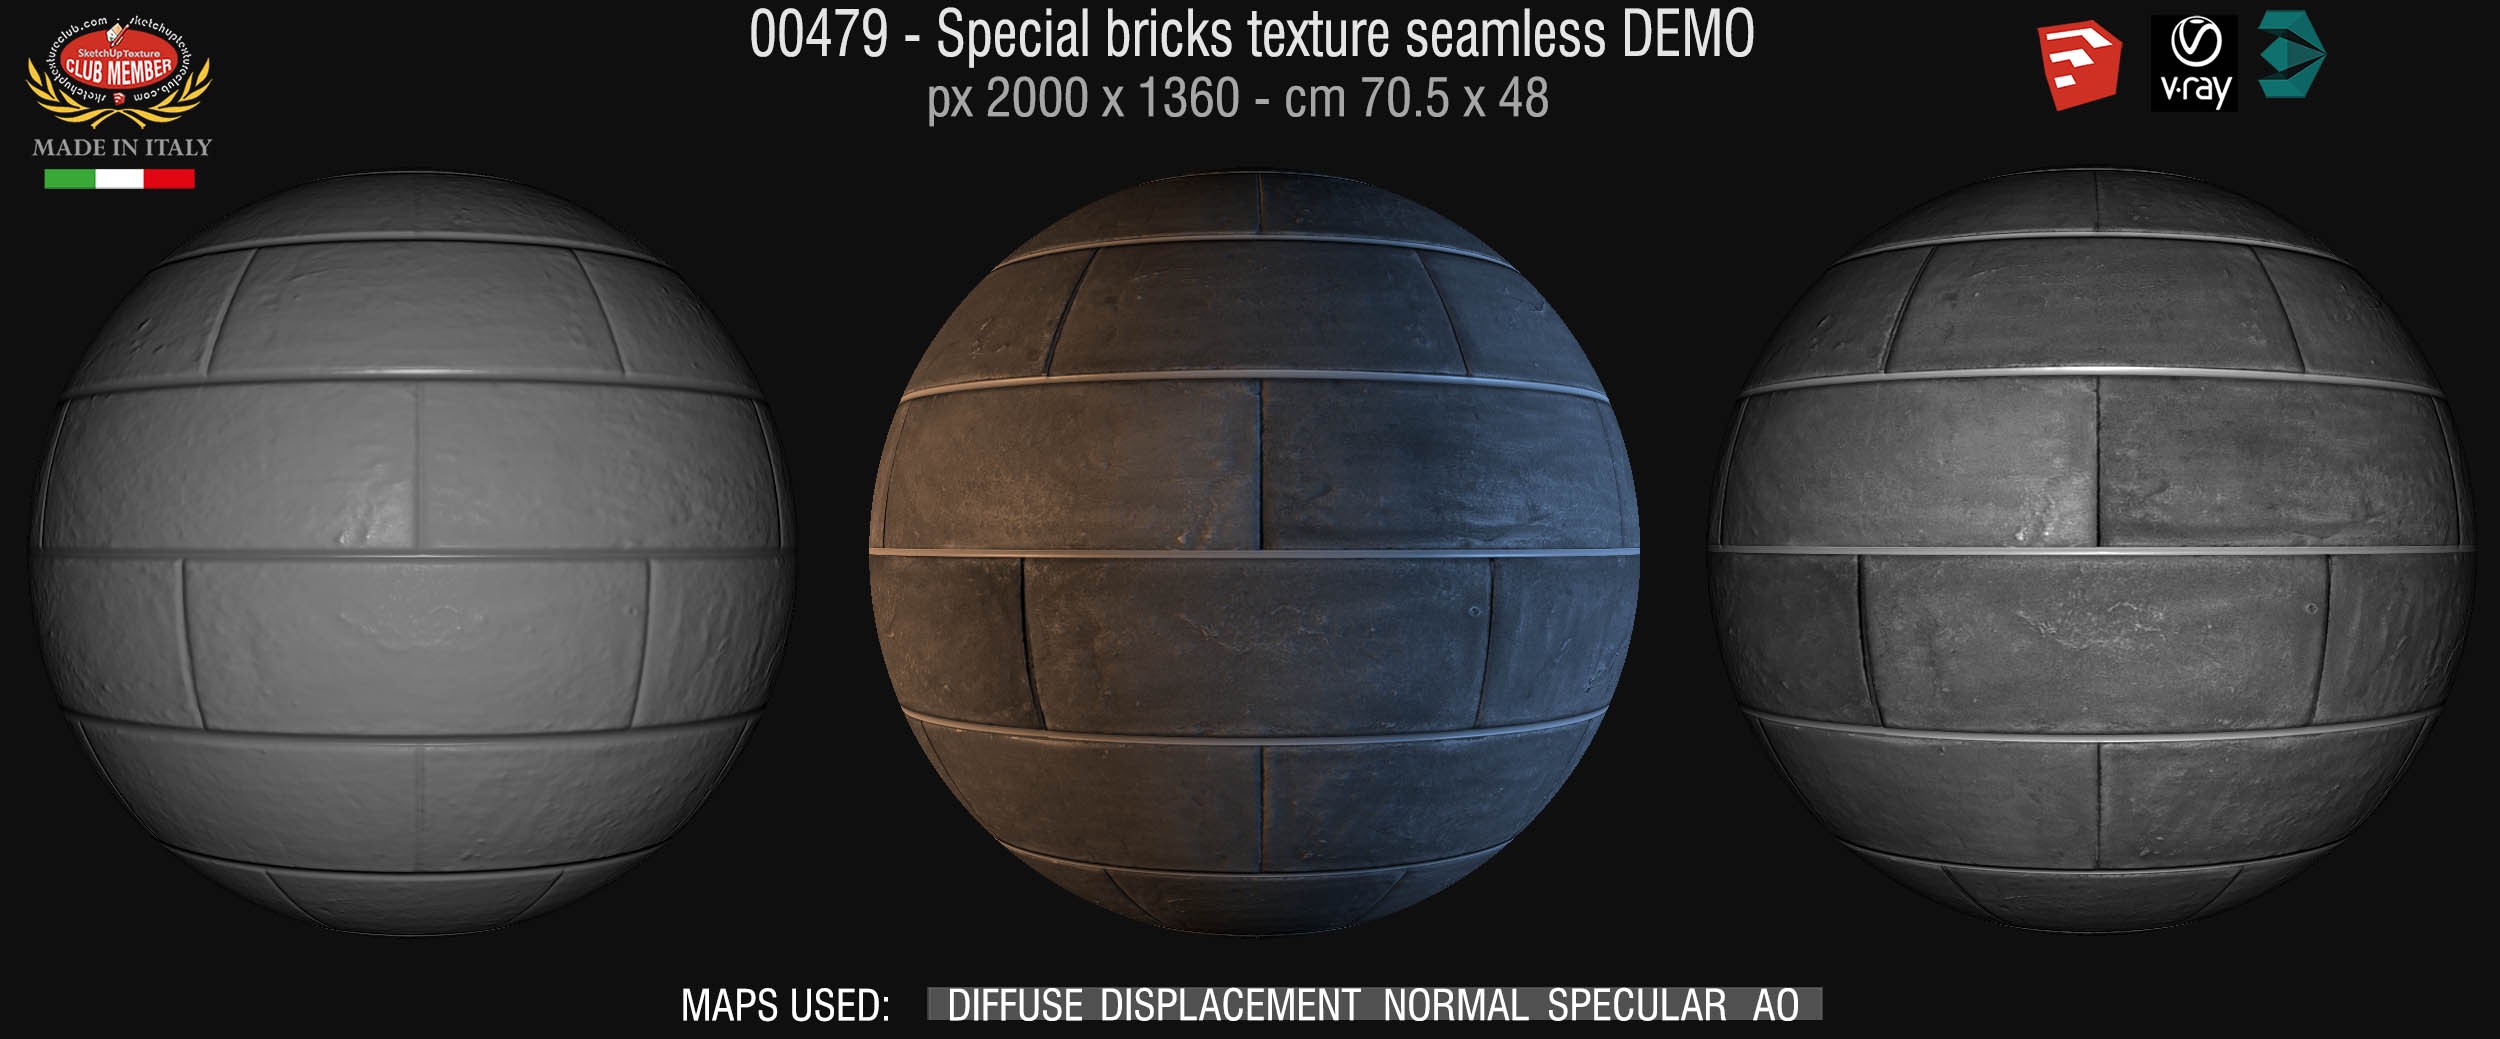 00477 Special bricks texture seamless + maps DEMO